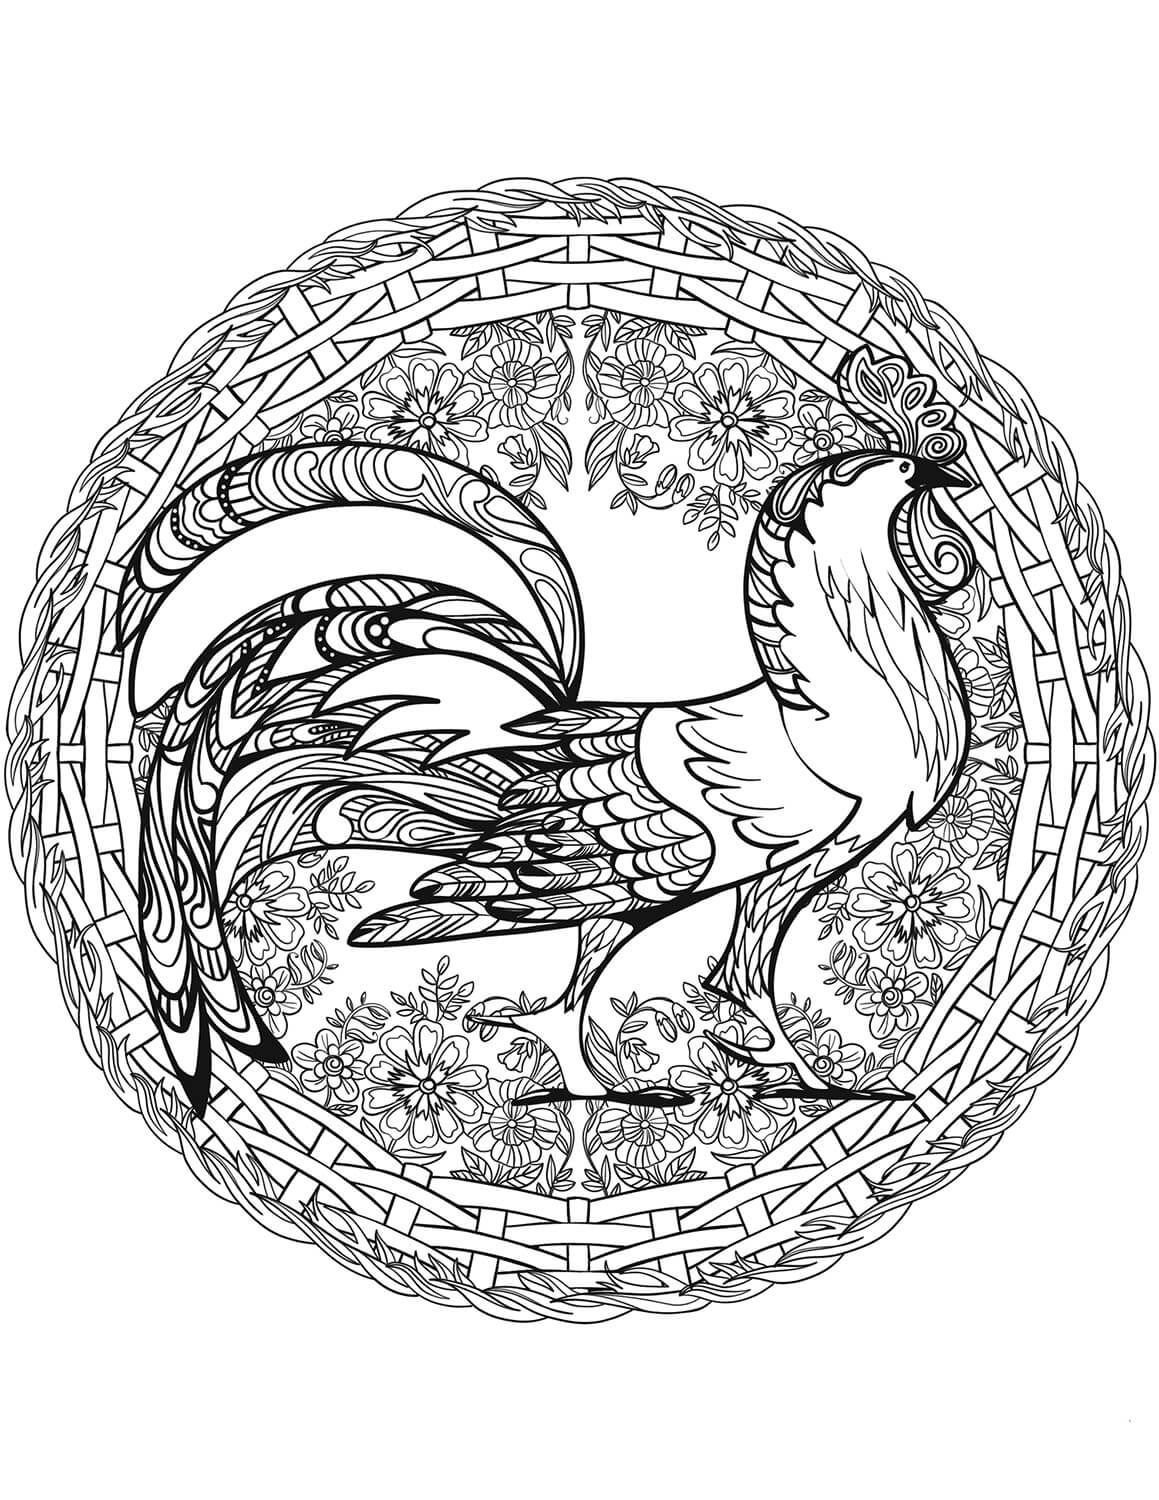 Mandala With a Royal Rooster Coloring Page Mandalas